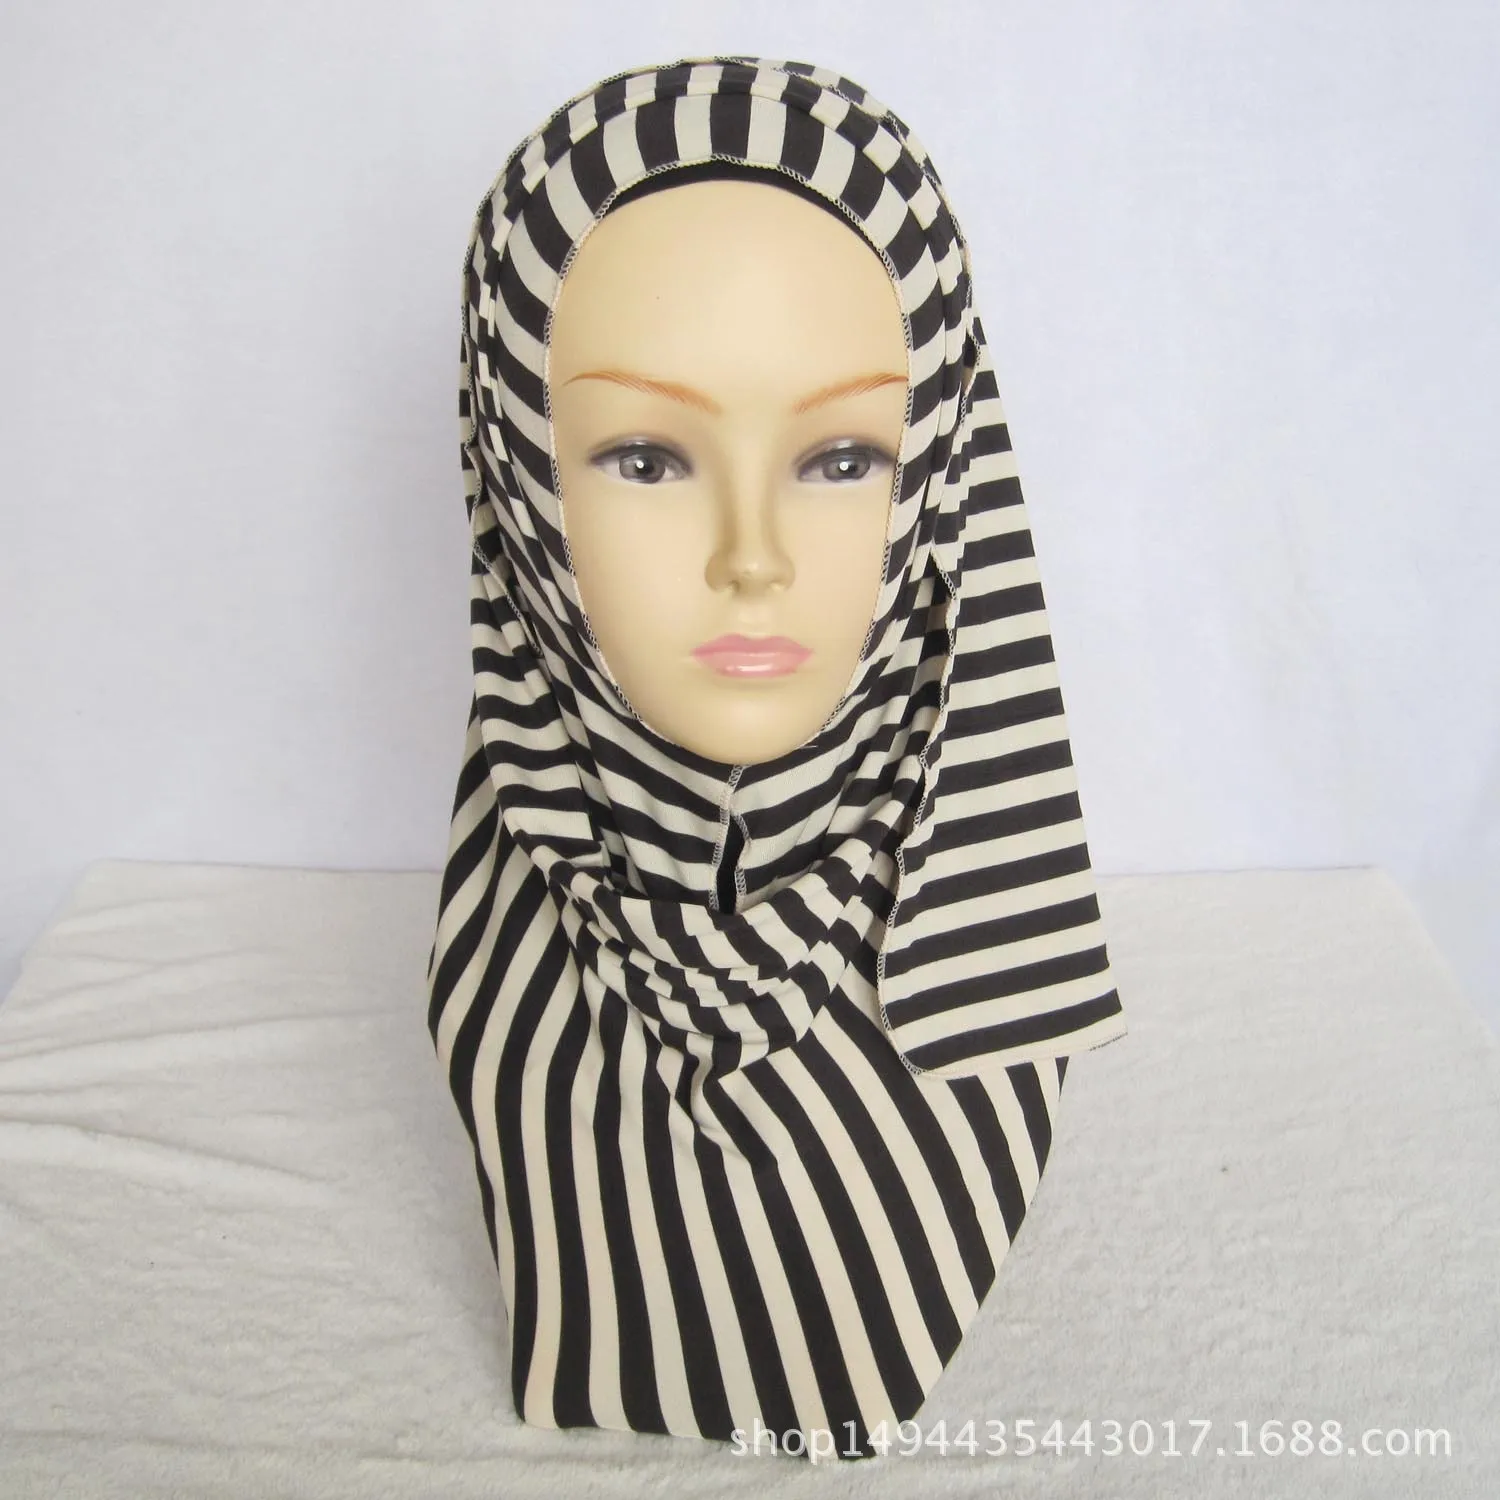 Yiwu мусульманские горячие модели классический полосатый трикотаж шарф многоцветный головной убор уютная шаль воздуха